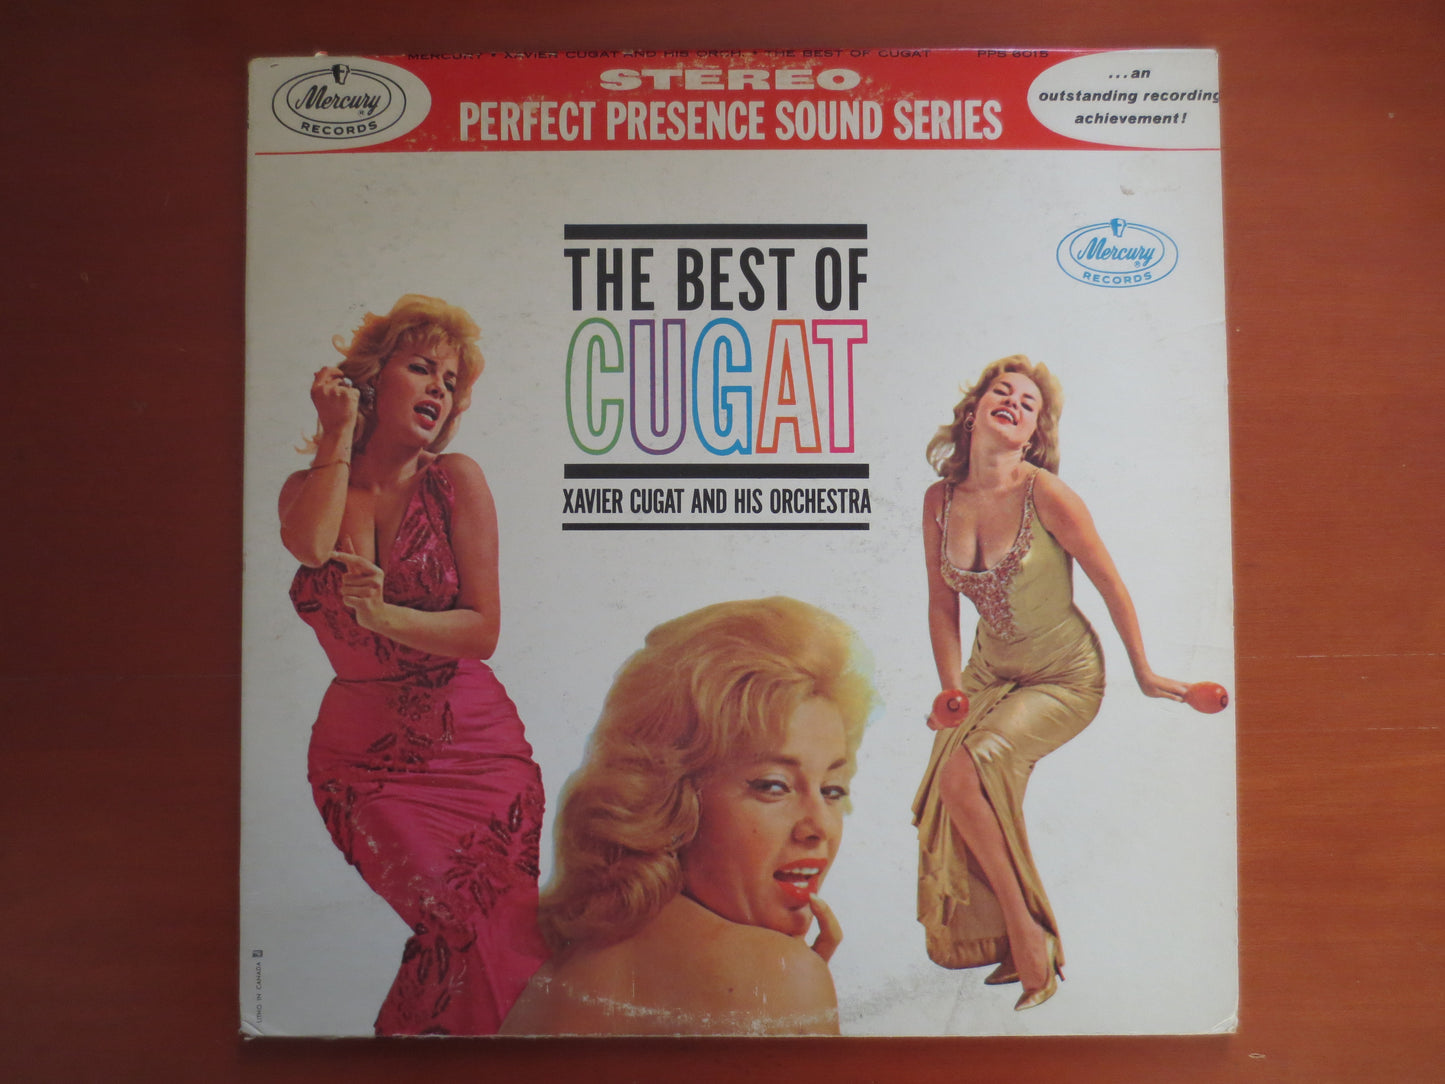 XAVIER CUGAT, Best of RECORDS, Xavier Cugat Albums, Xavier Cugat Vinyl, Vintage Vinyl, Vinyl Records, Vinyl, 1961 Records